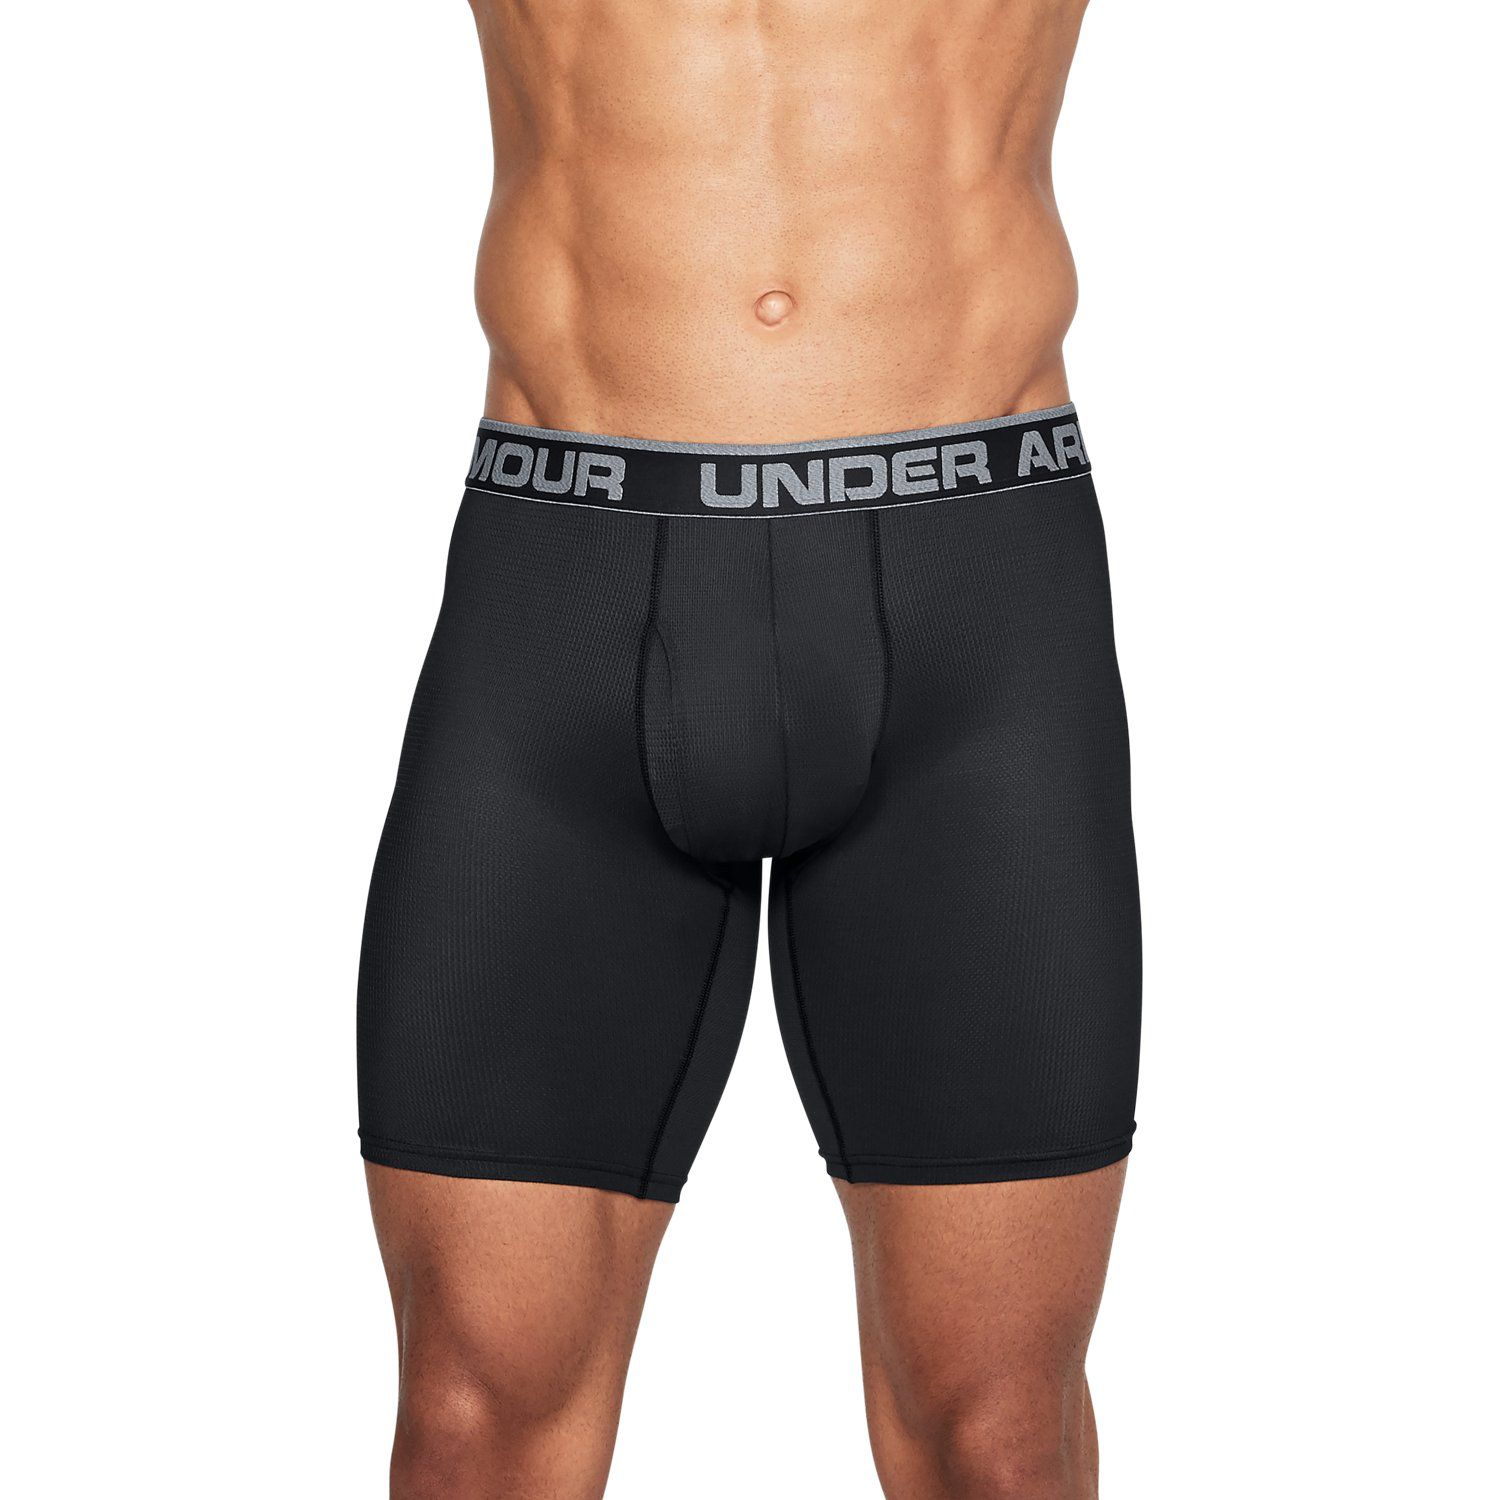 under armour men's boxer underwear